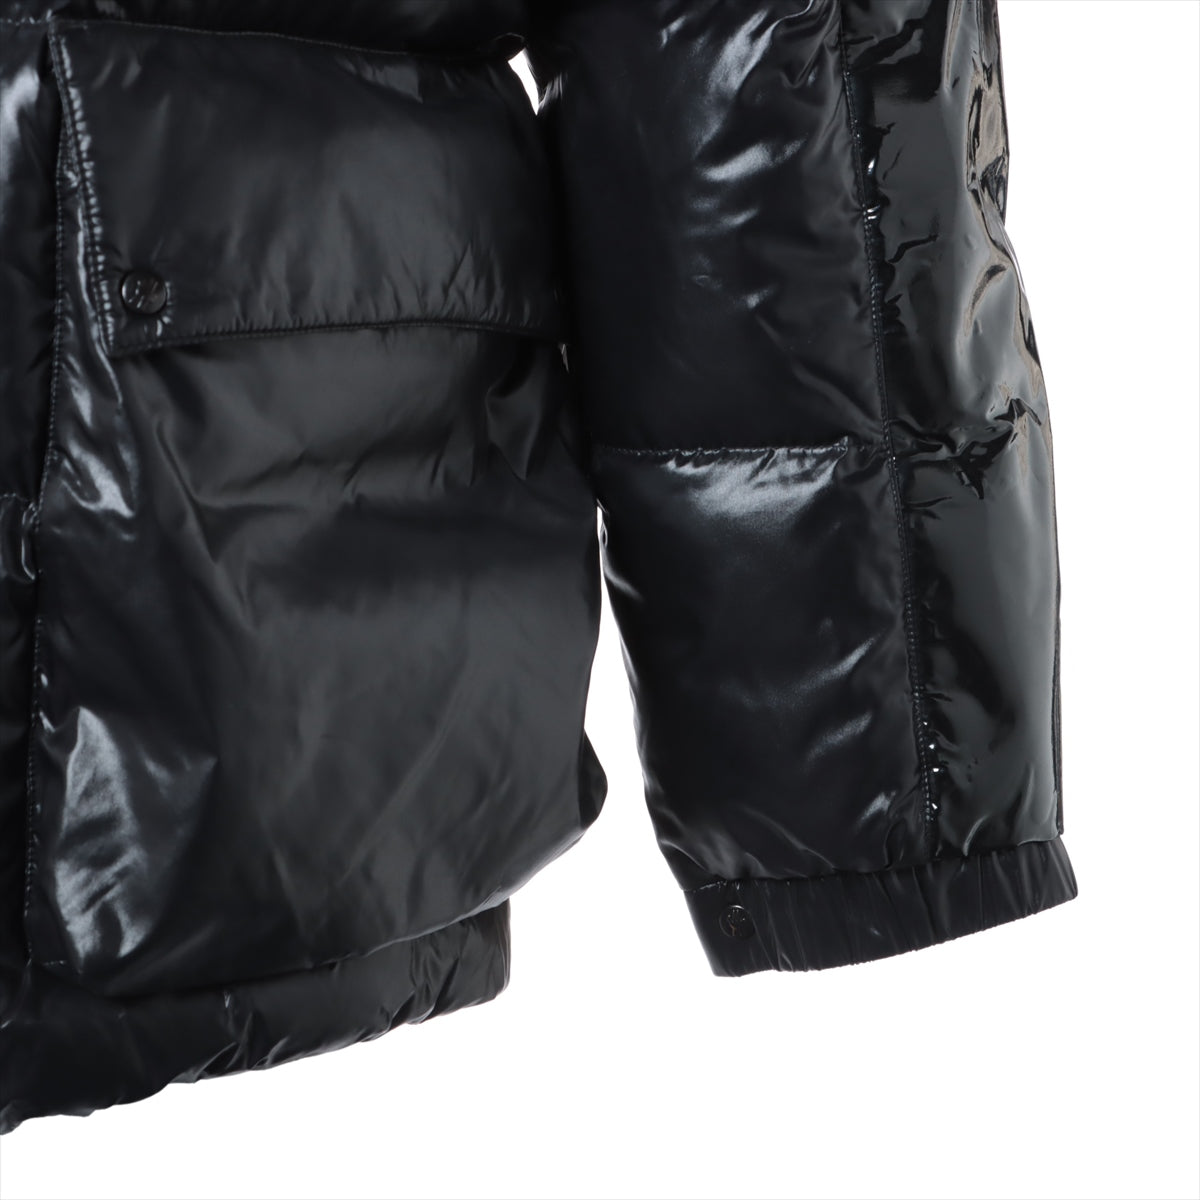 Moncler Genius Fragment NIEUPORT 19-year Nylon Down jacket 1 Men's Black  Removable hood Hiroshi Fujiwara